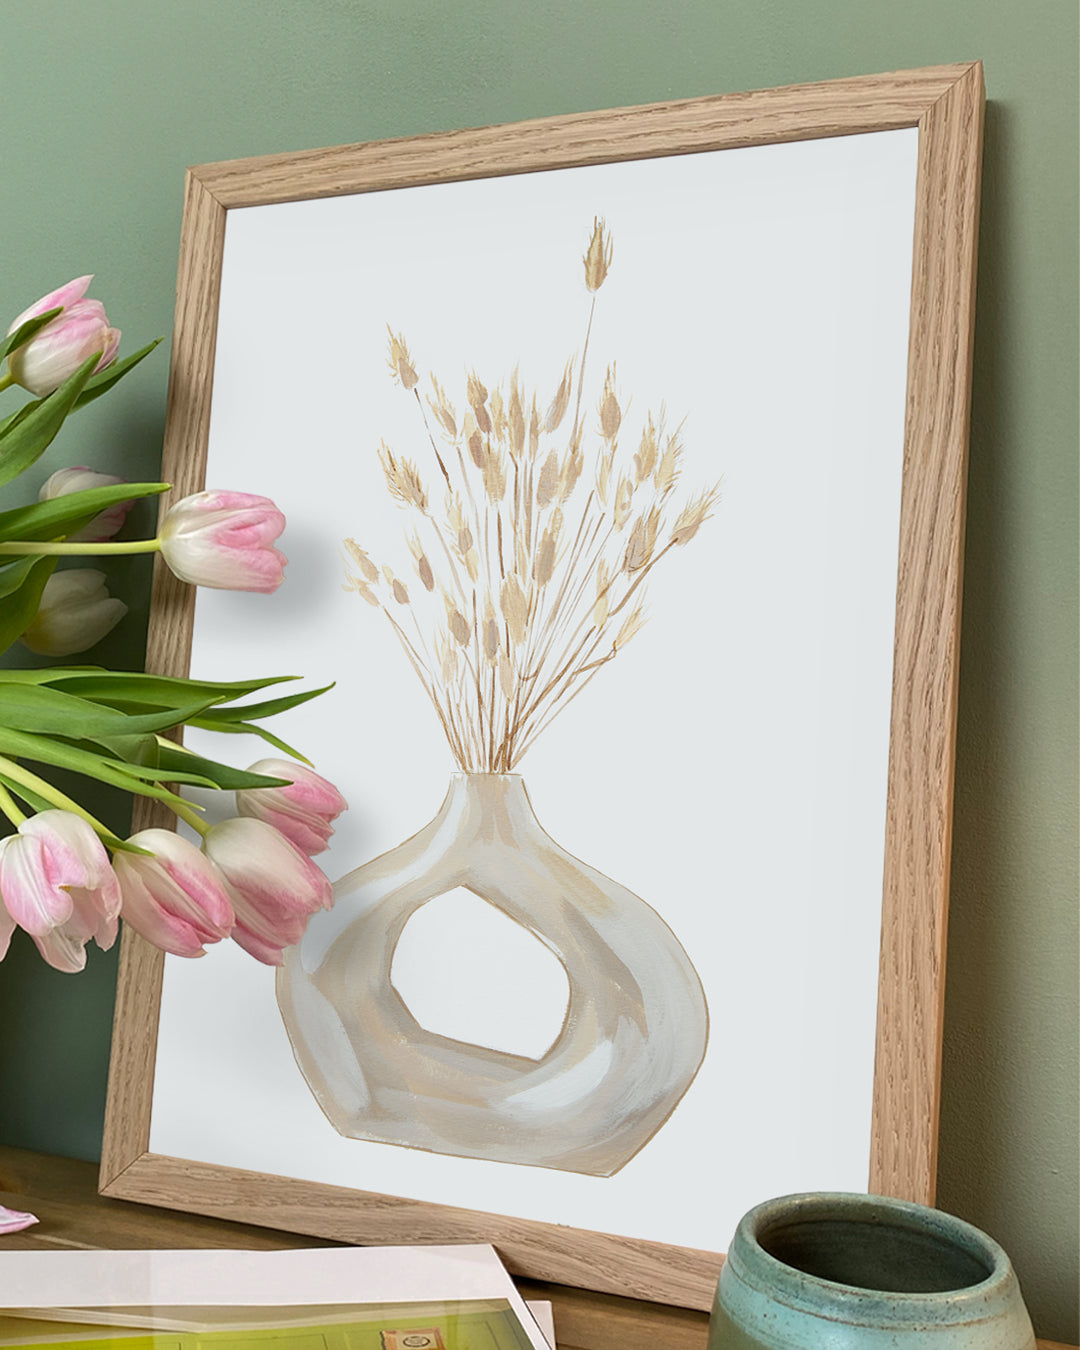 Bunny Tail Vase Wall Art Print - Pflanzendrucke, botanische Kunstdrucke und botanische Illustrationen